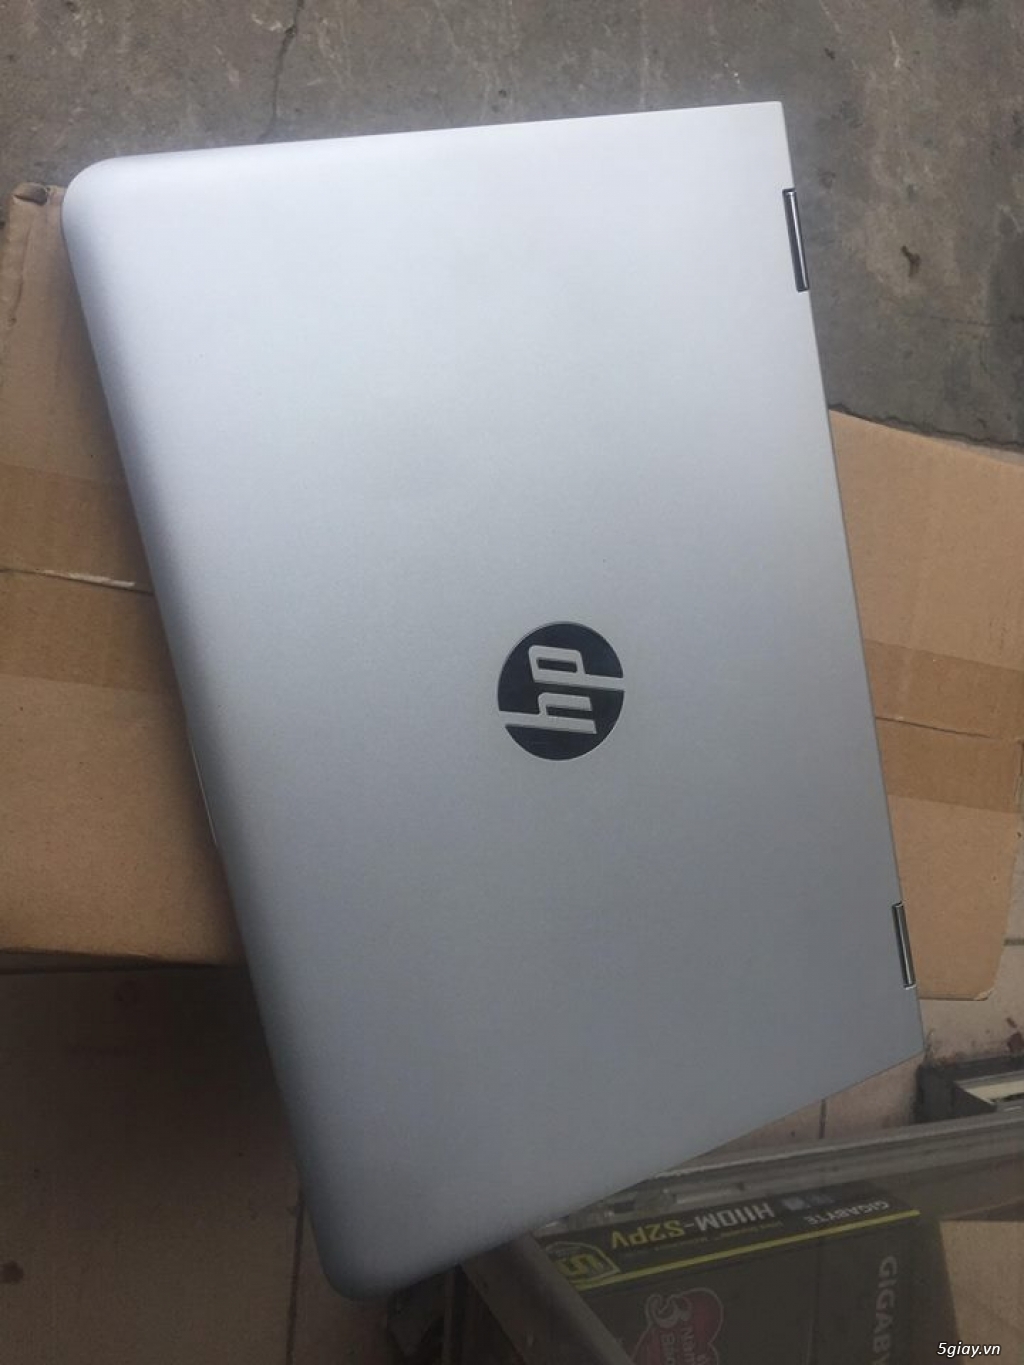 Laptop HP Pavilion x360 M3 i3 7100u Cảm ứng Gập 360 Độ giá rẻ